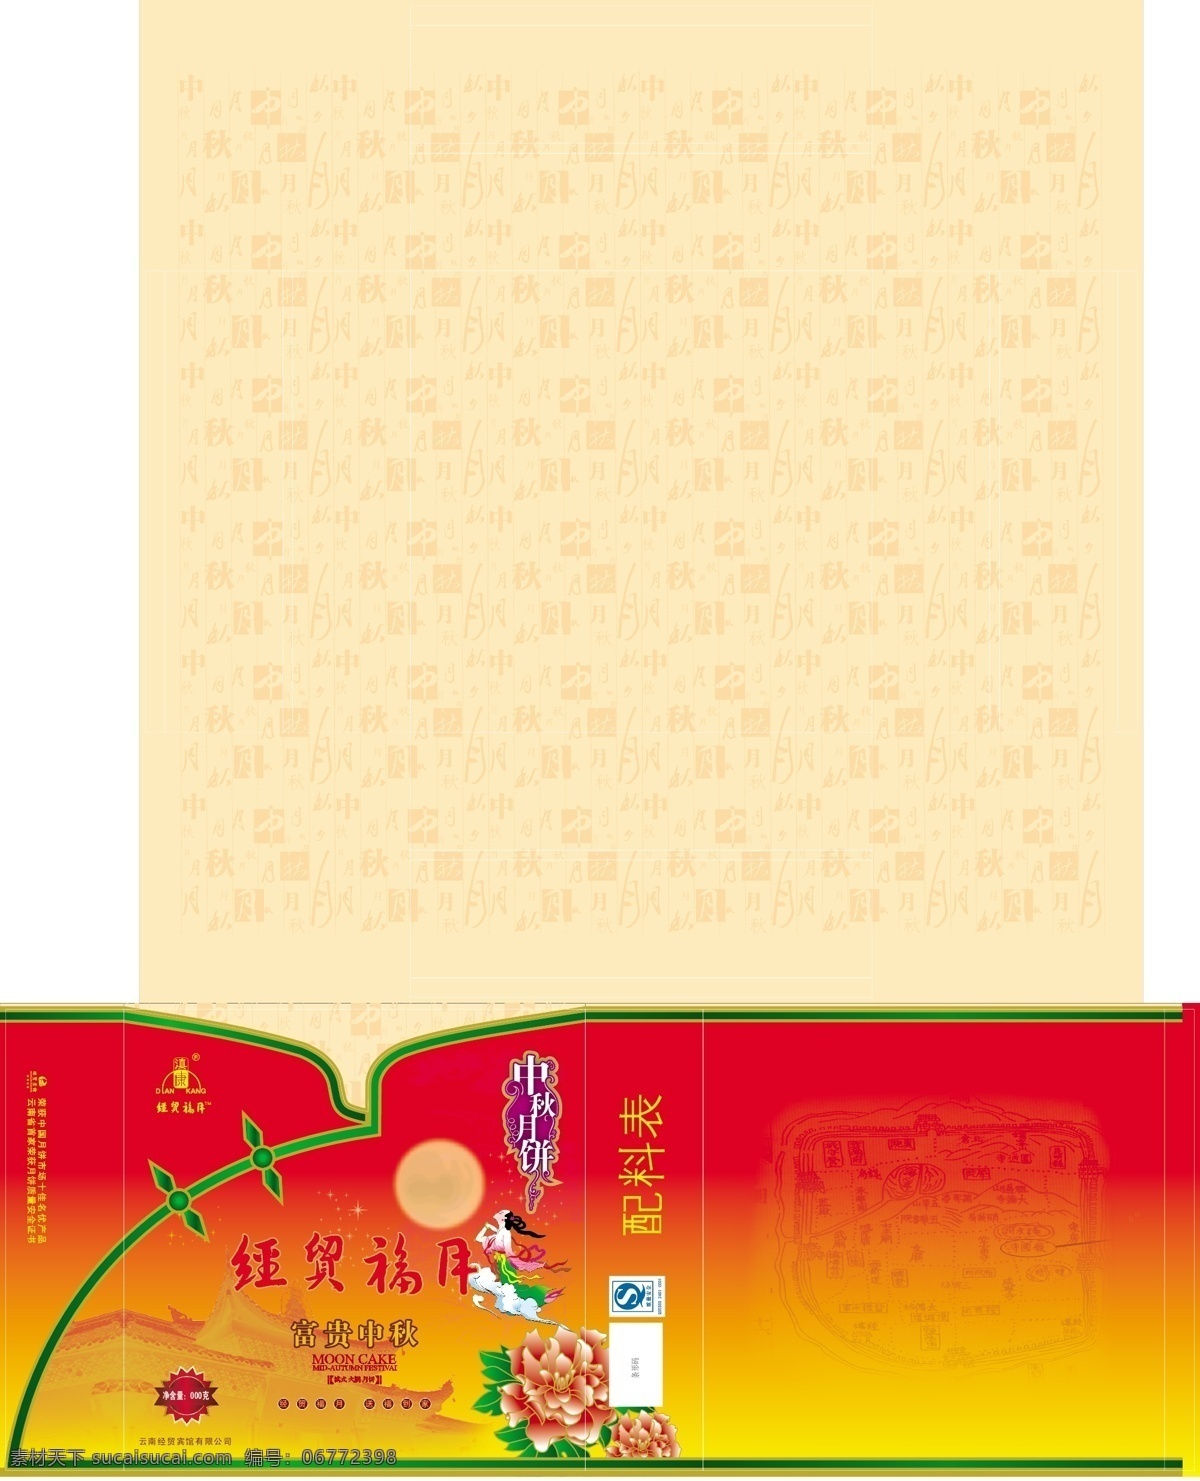 月饼包装 模板下载 矢量 食品包装 礼盒品包 红色